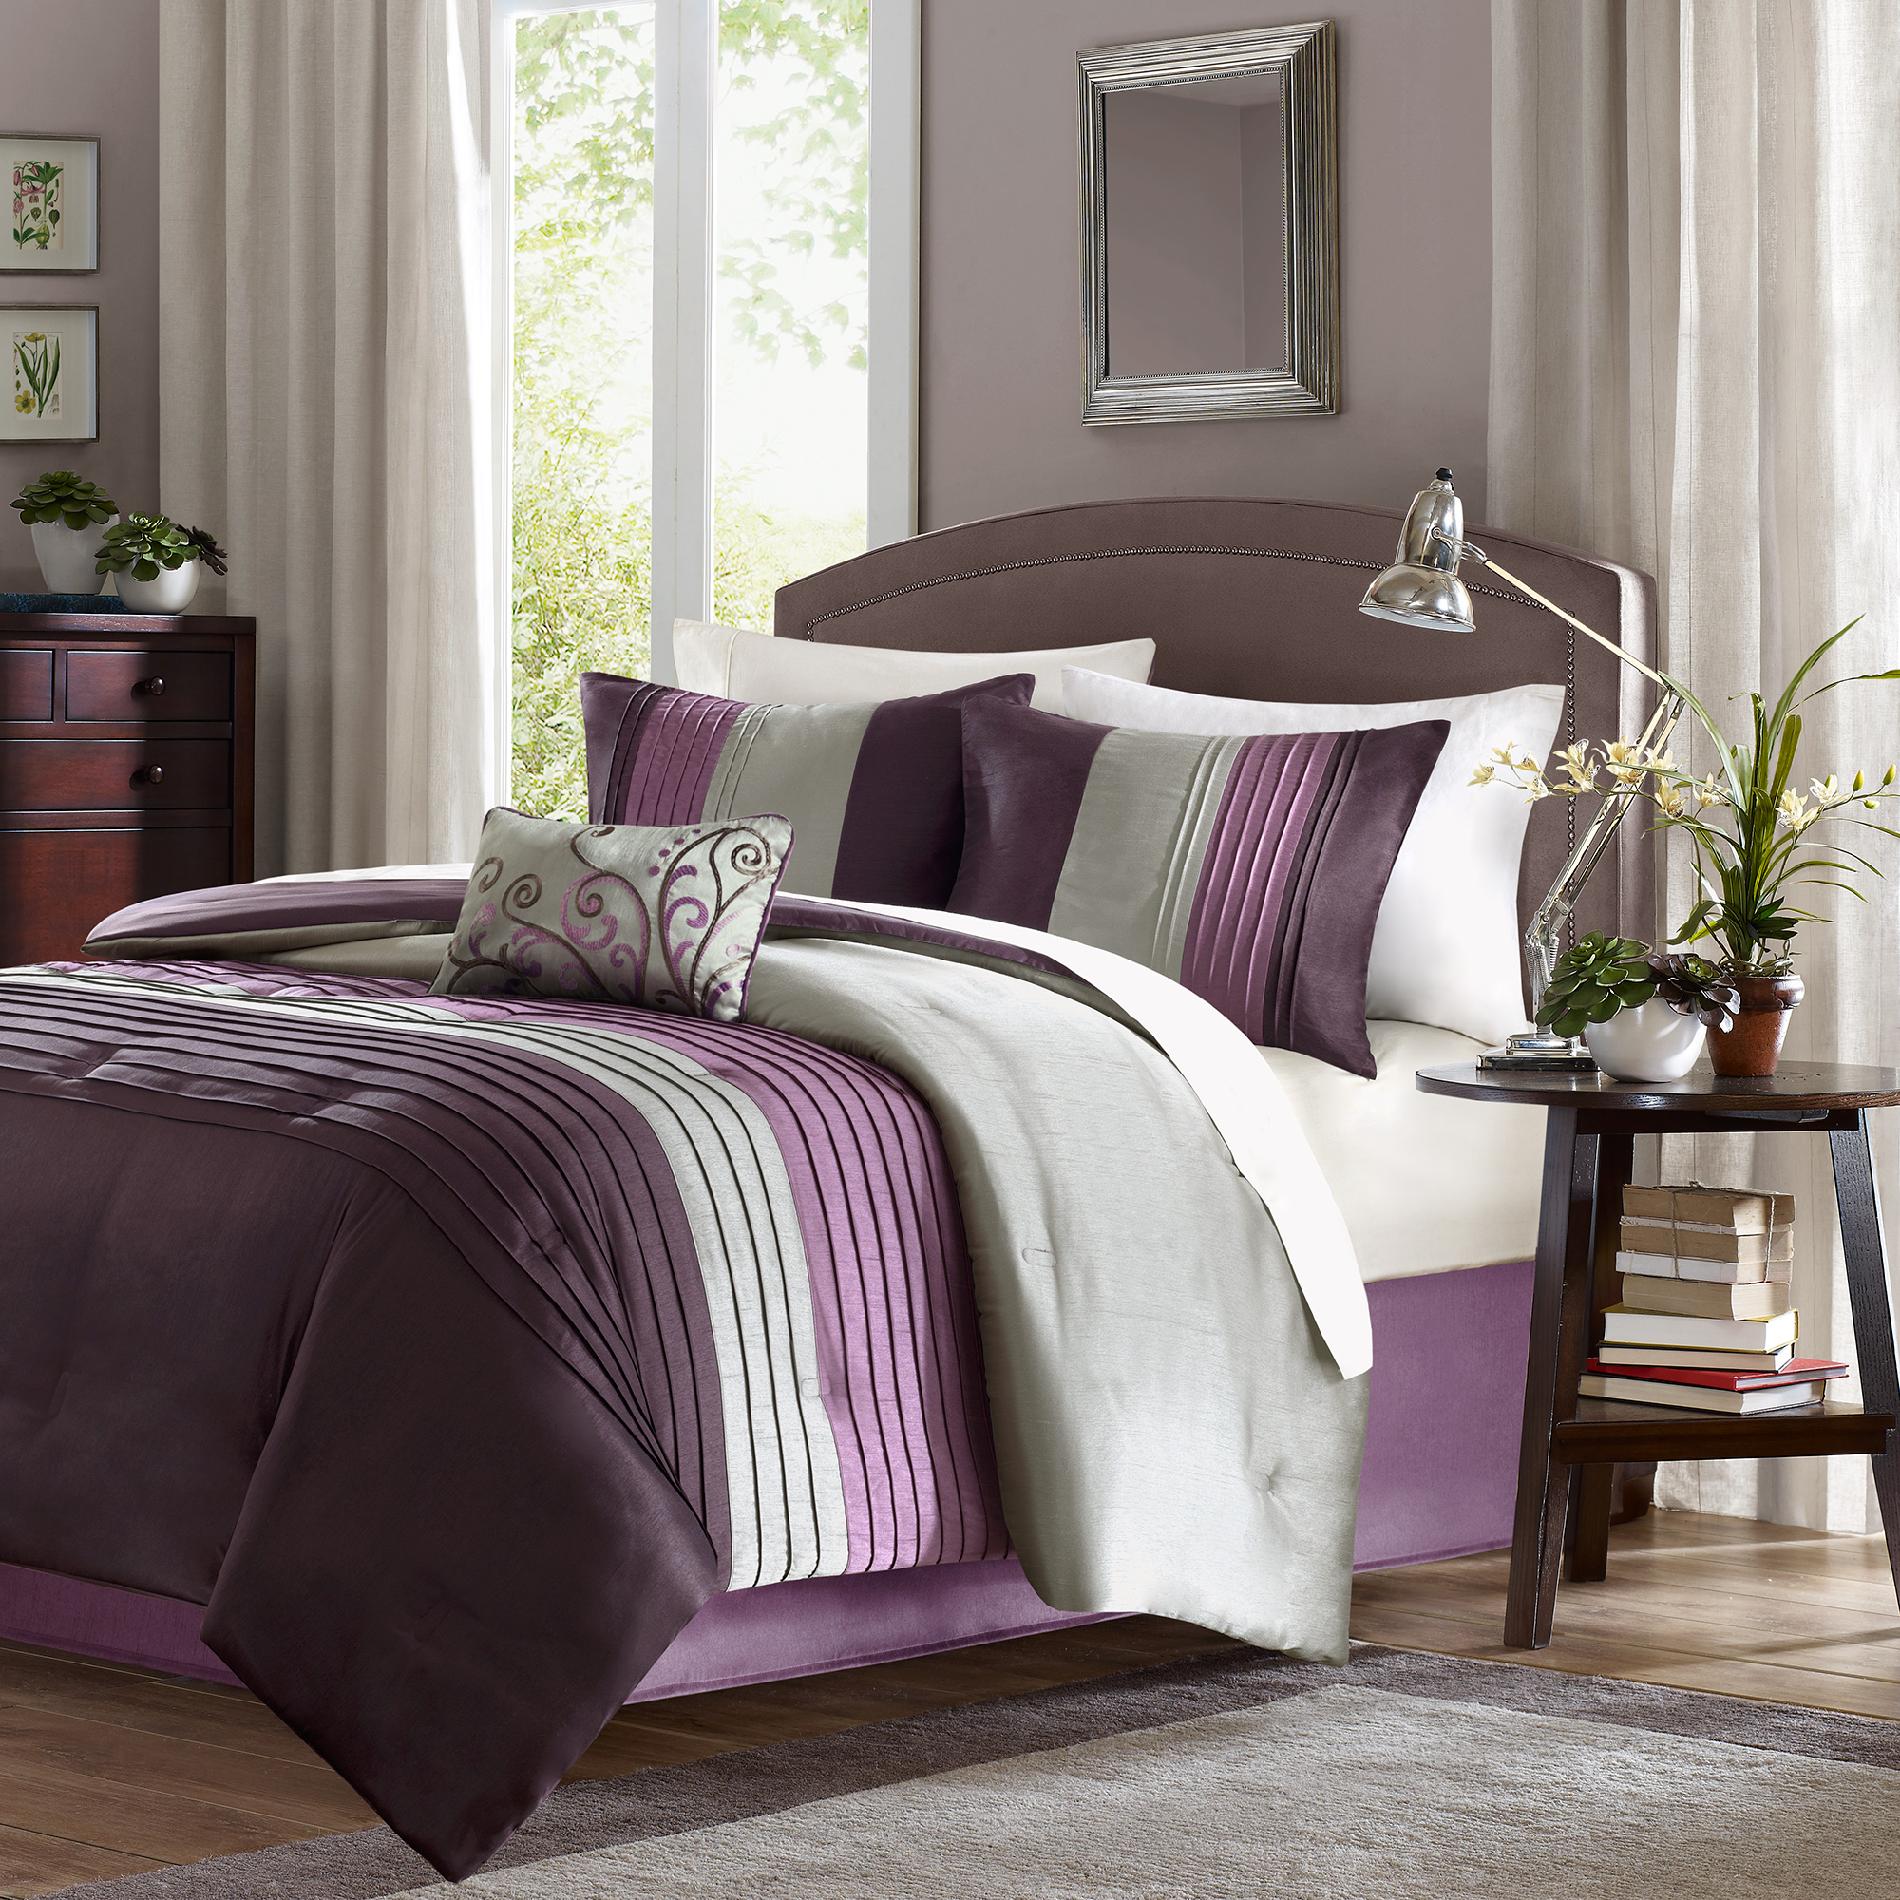 Grand Resort Belleview 5-Piece King Comforter Set - Purple